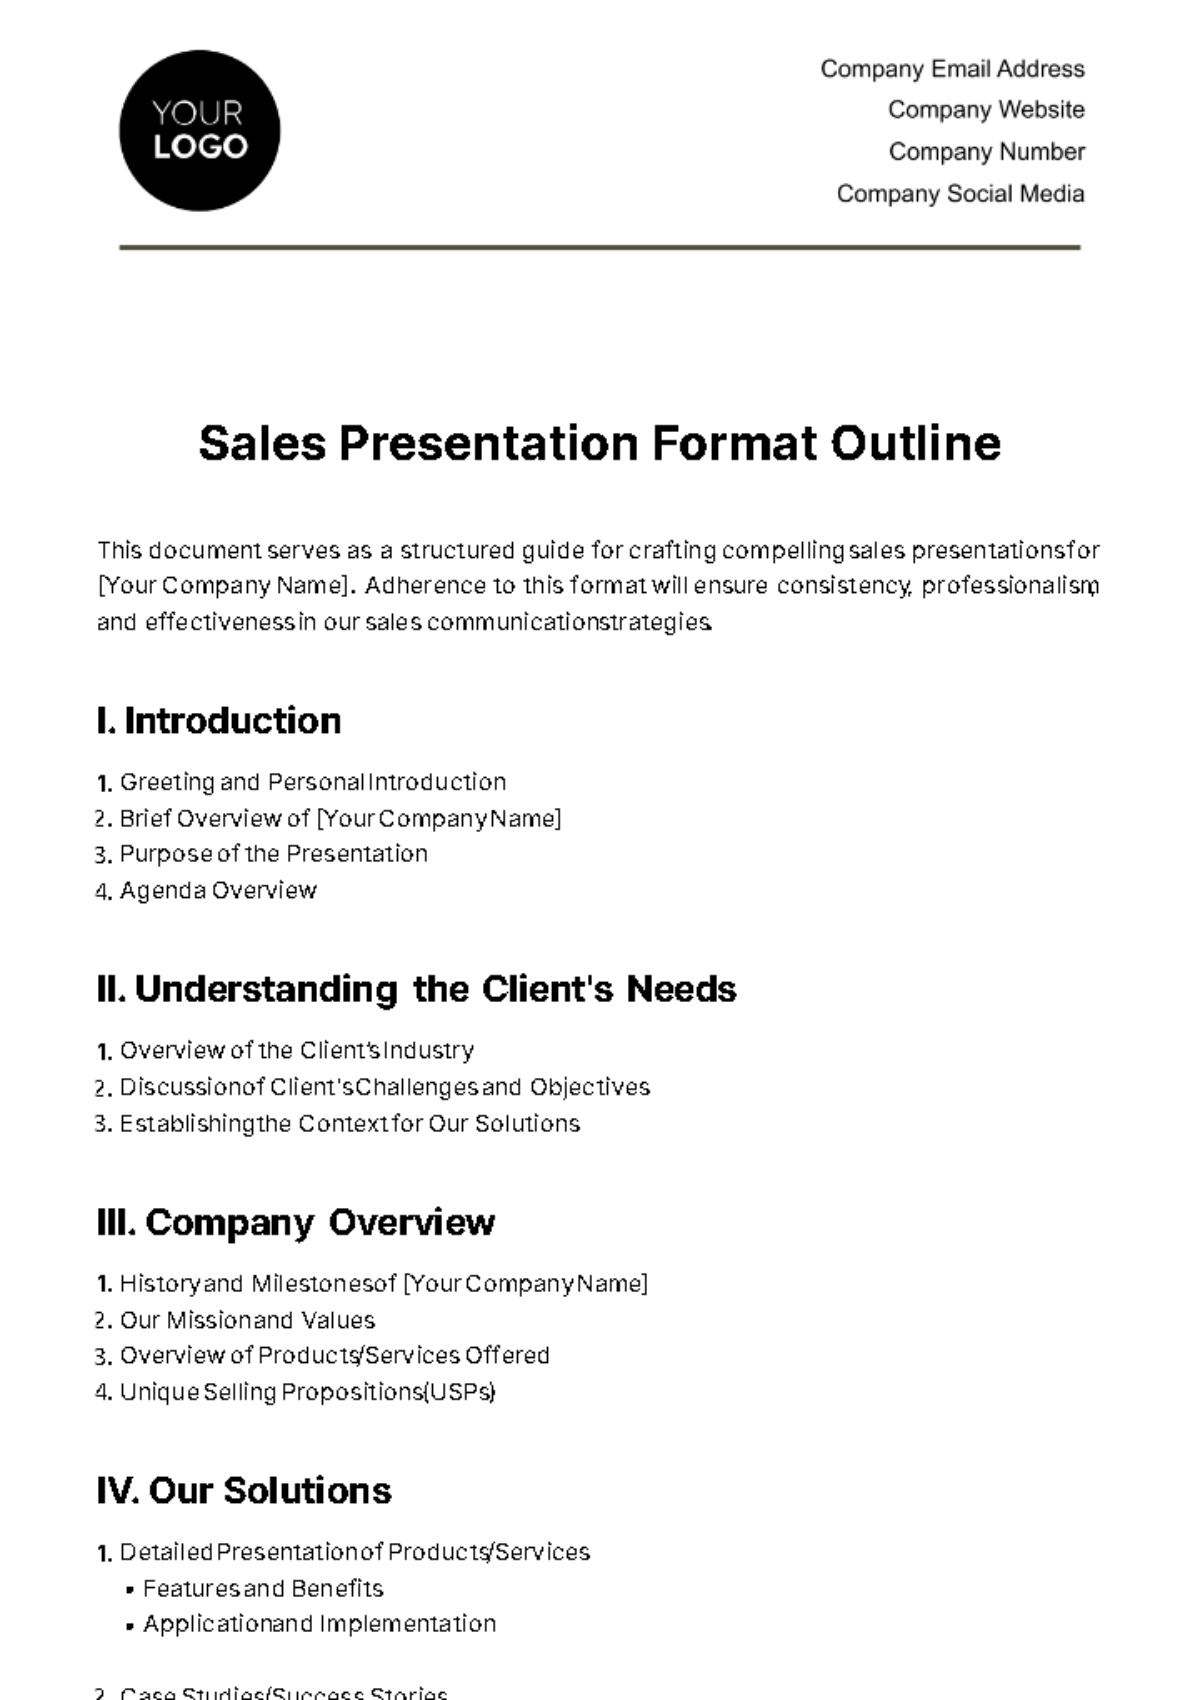 Sales Presentation Format Outline Template